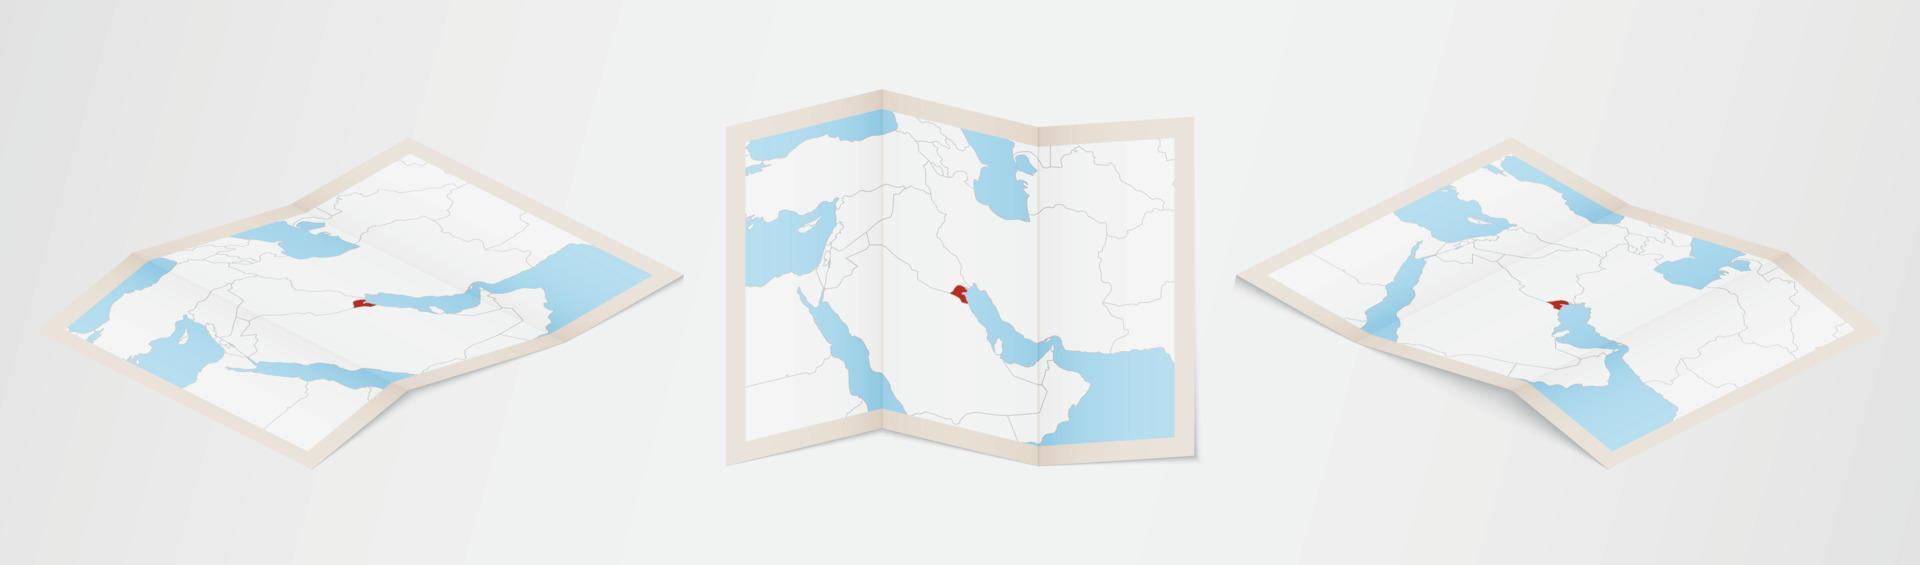 gevouwen kaart van Koeweit in drie verschillend versies. vector